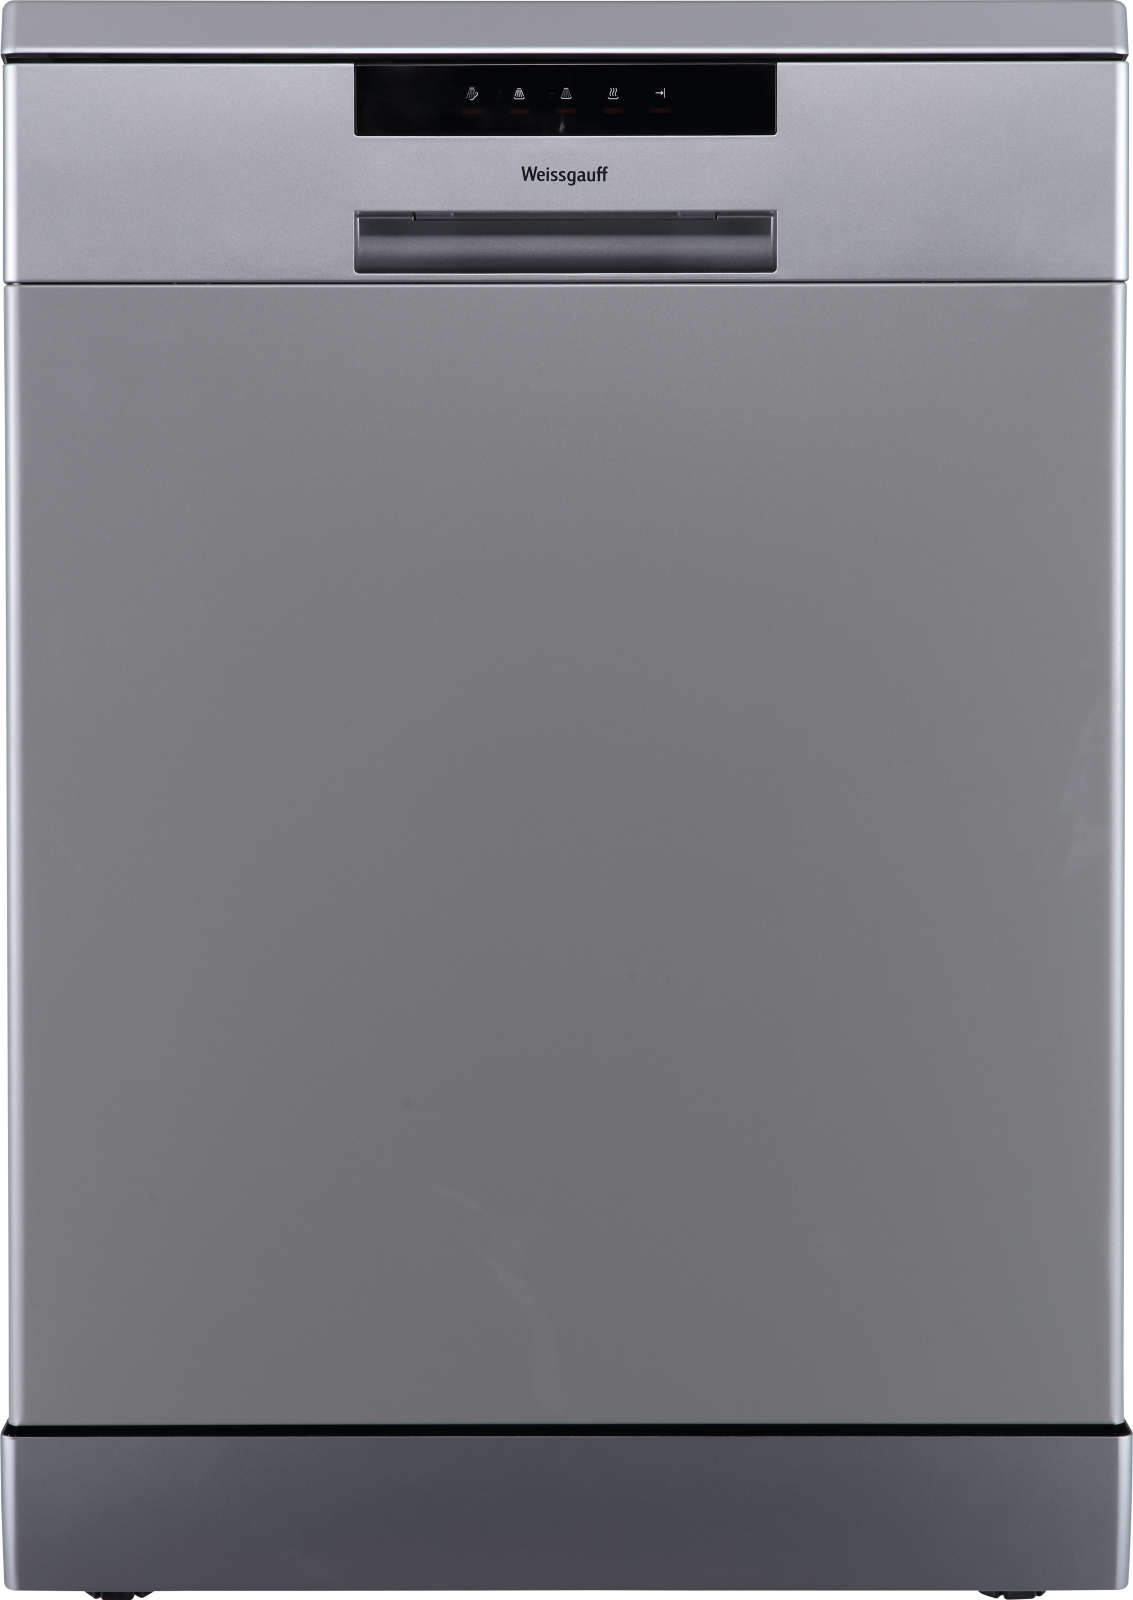 Посудомоечная машина Weissgauff DW 6013 Inox серебристый посудомоечная машина weissgauff dw 4015 серебристый